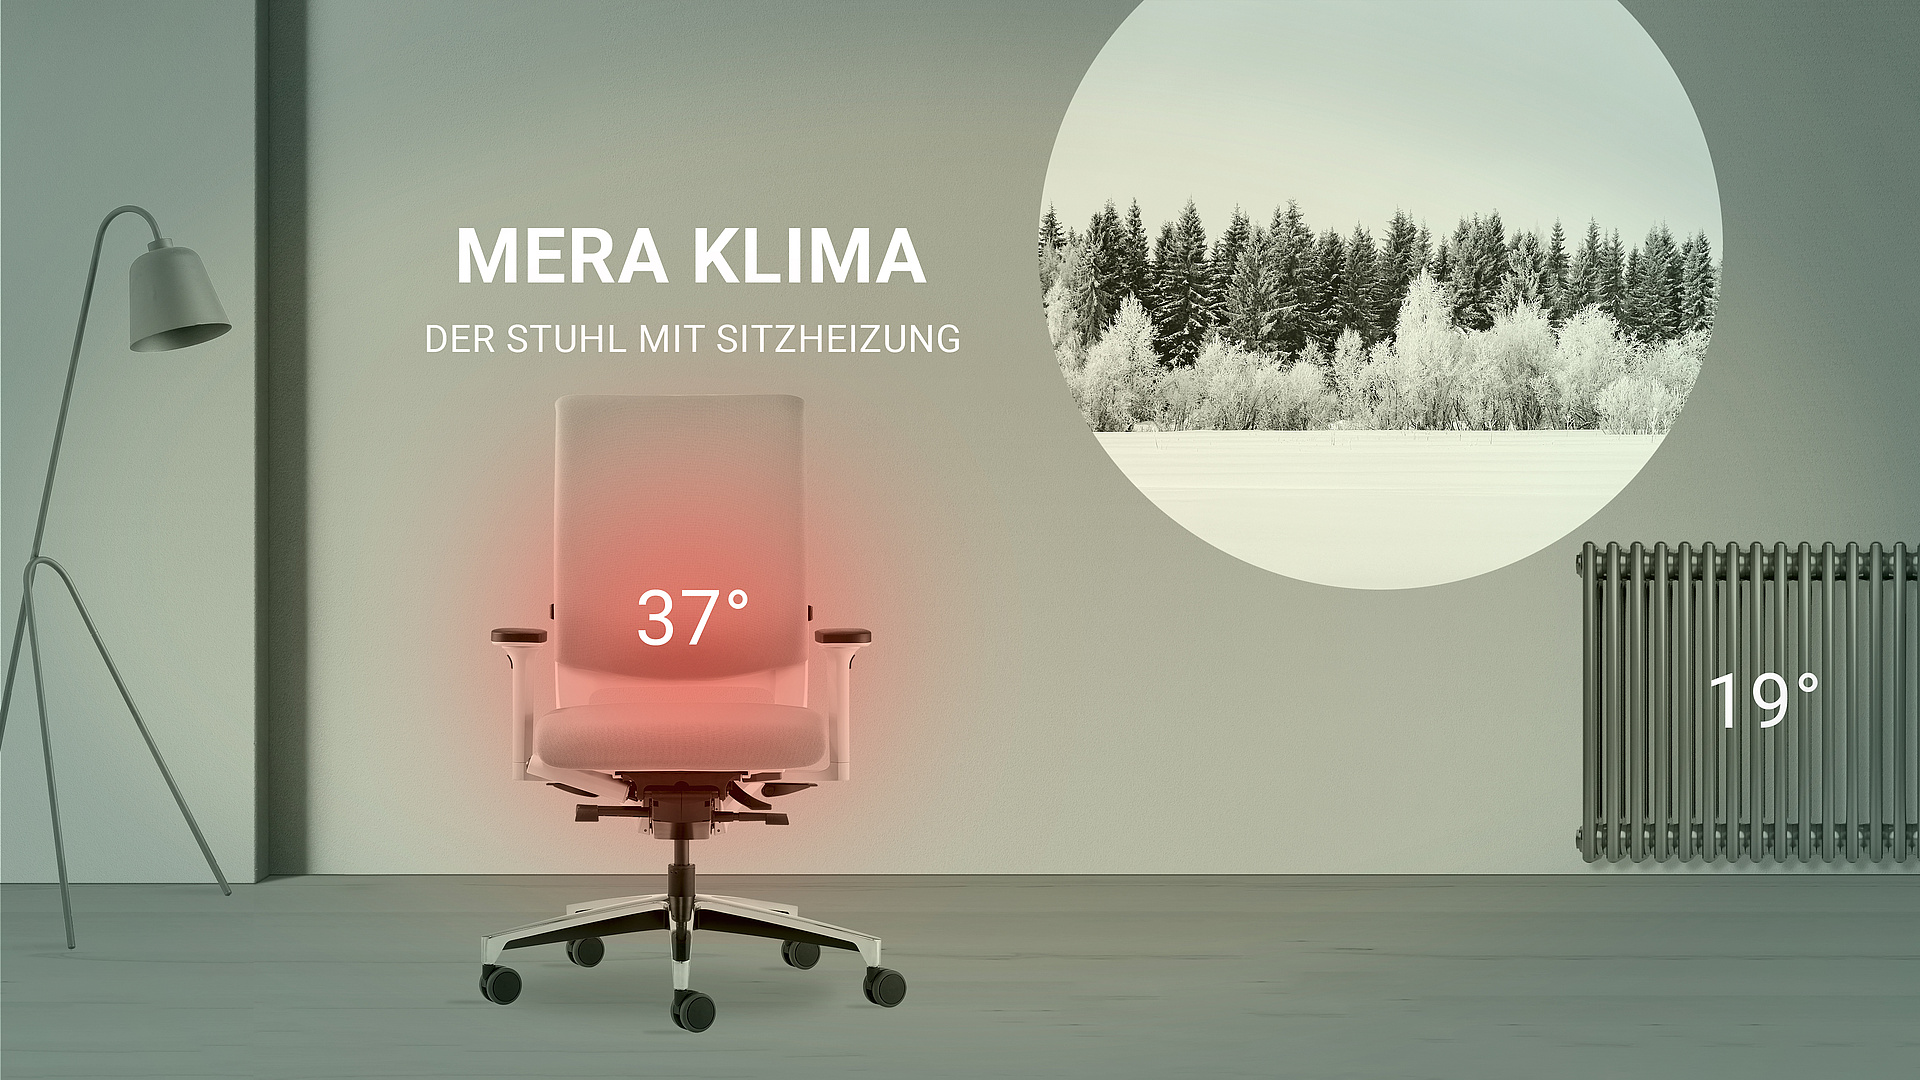 Klimastuhl Mera, mit Sitzheizung und Lüftung, von Klöber, - Lieferzeit:  25 - 30 Werktage 